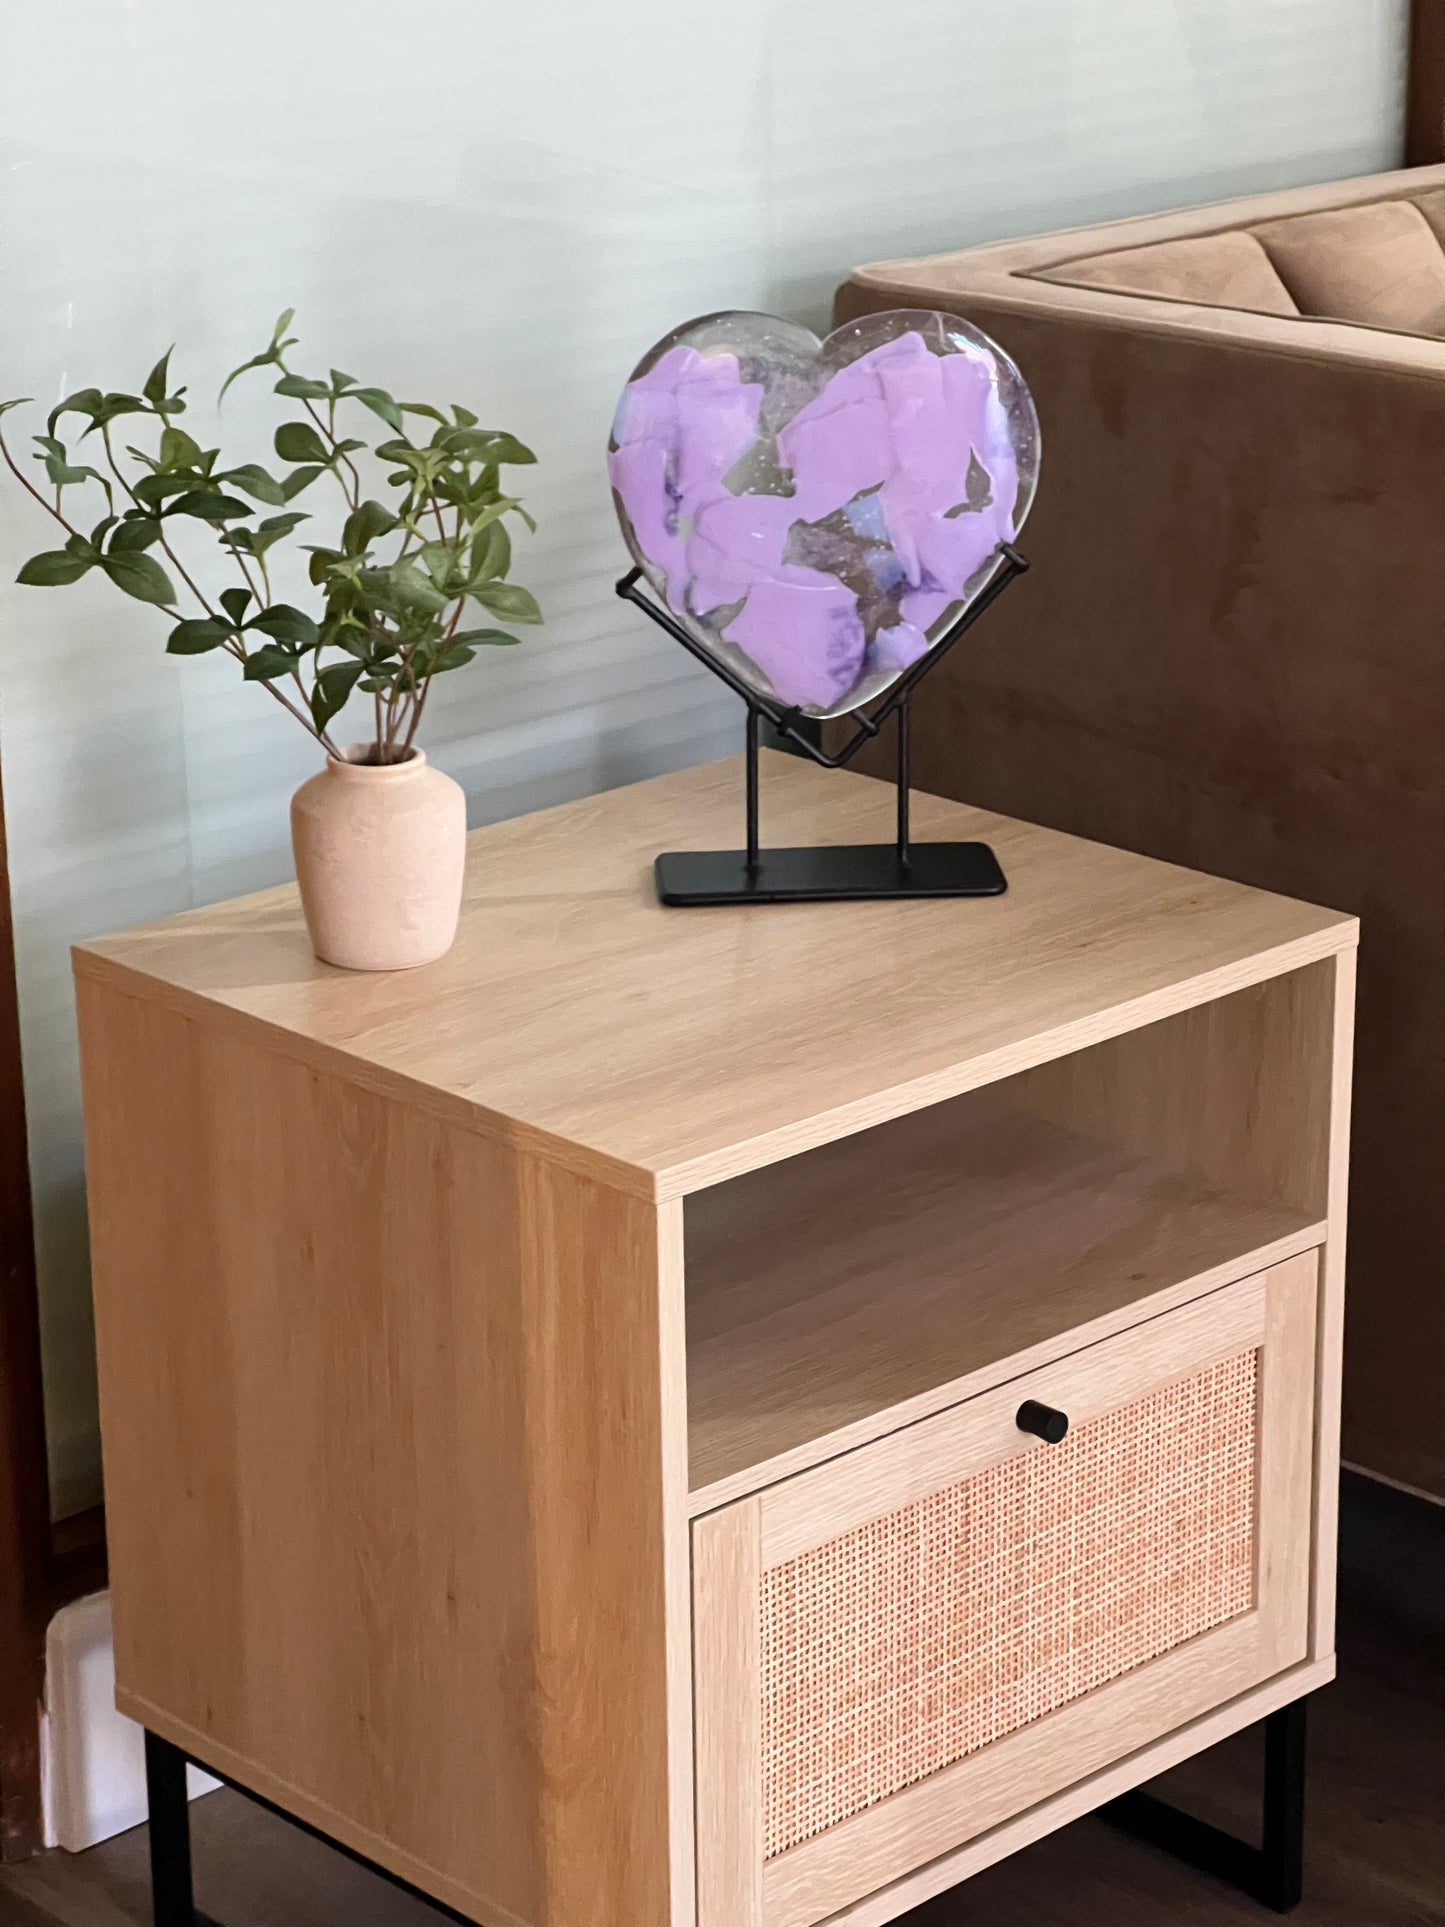 Glass Heart - Lavender Confetti